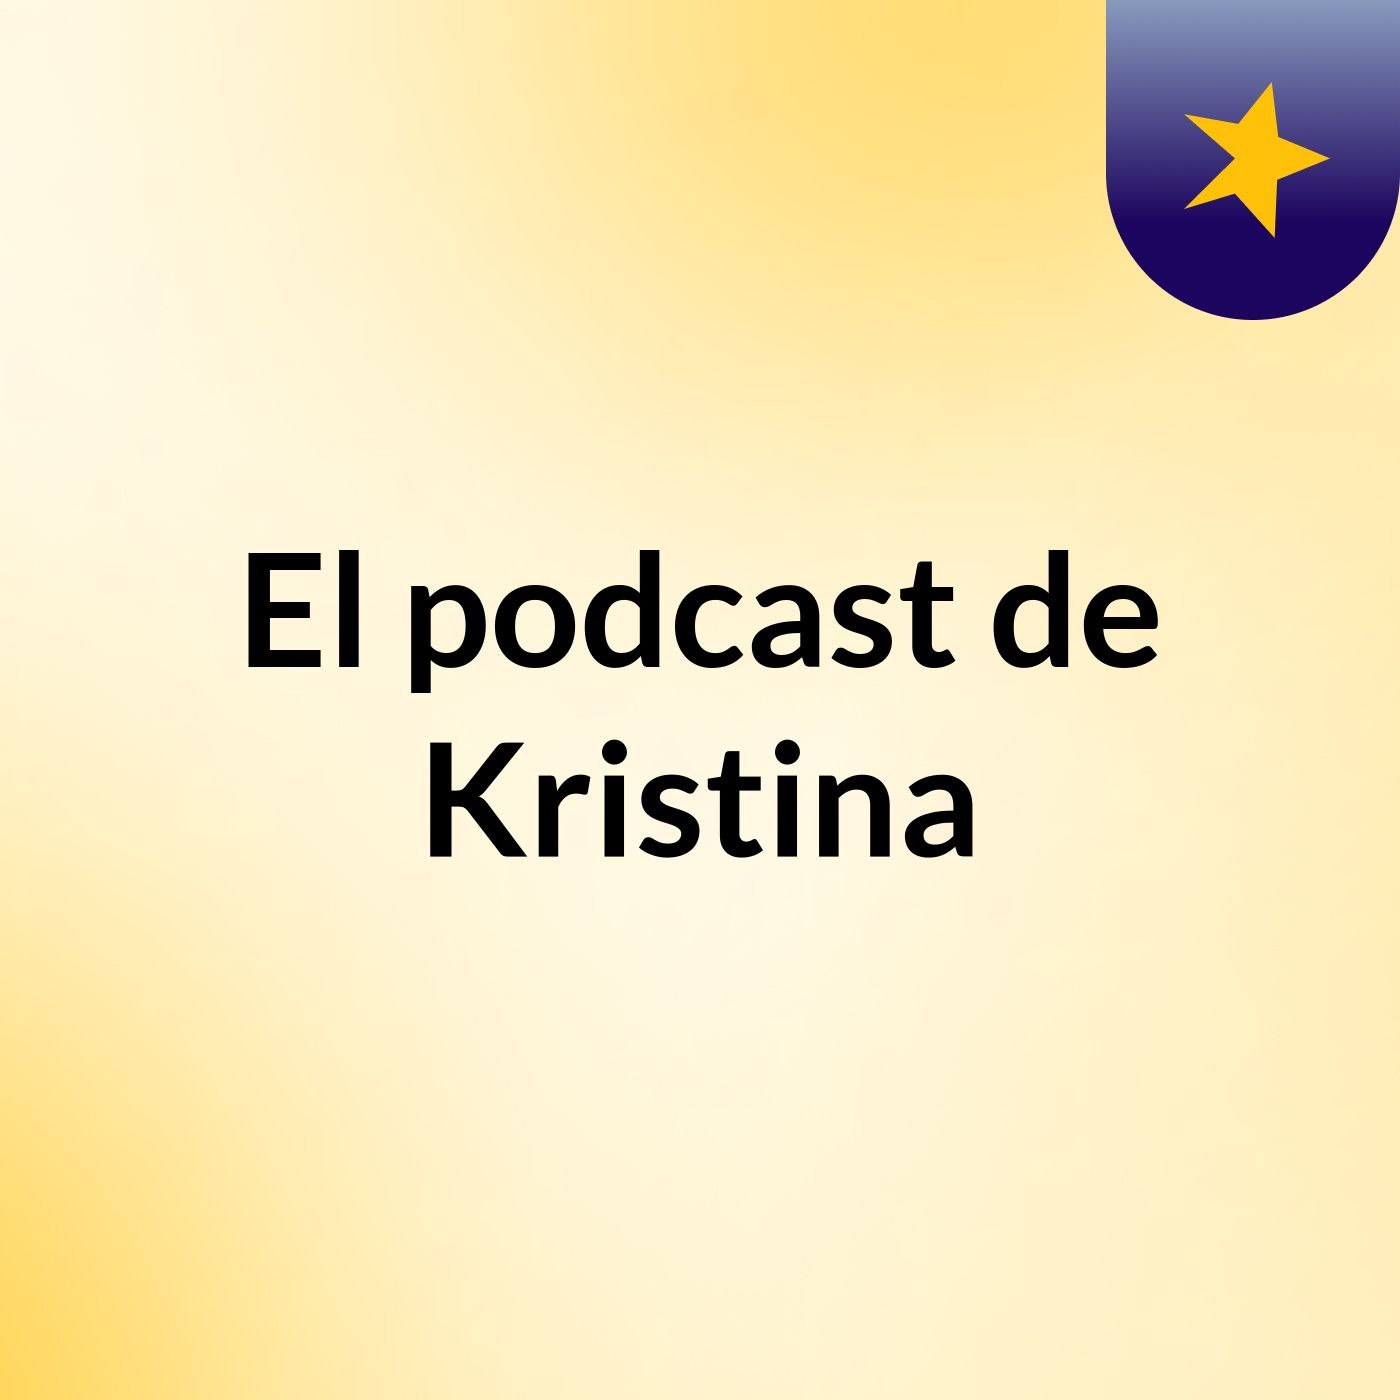 Episodio 3 - El podcast de Kristina